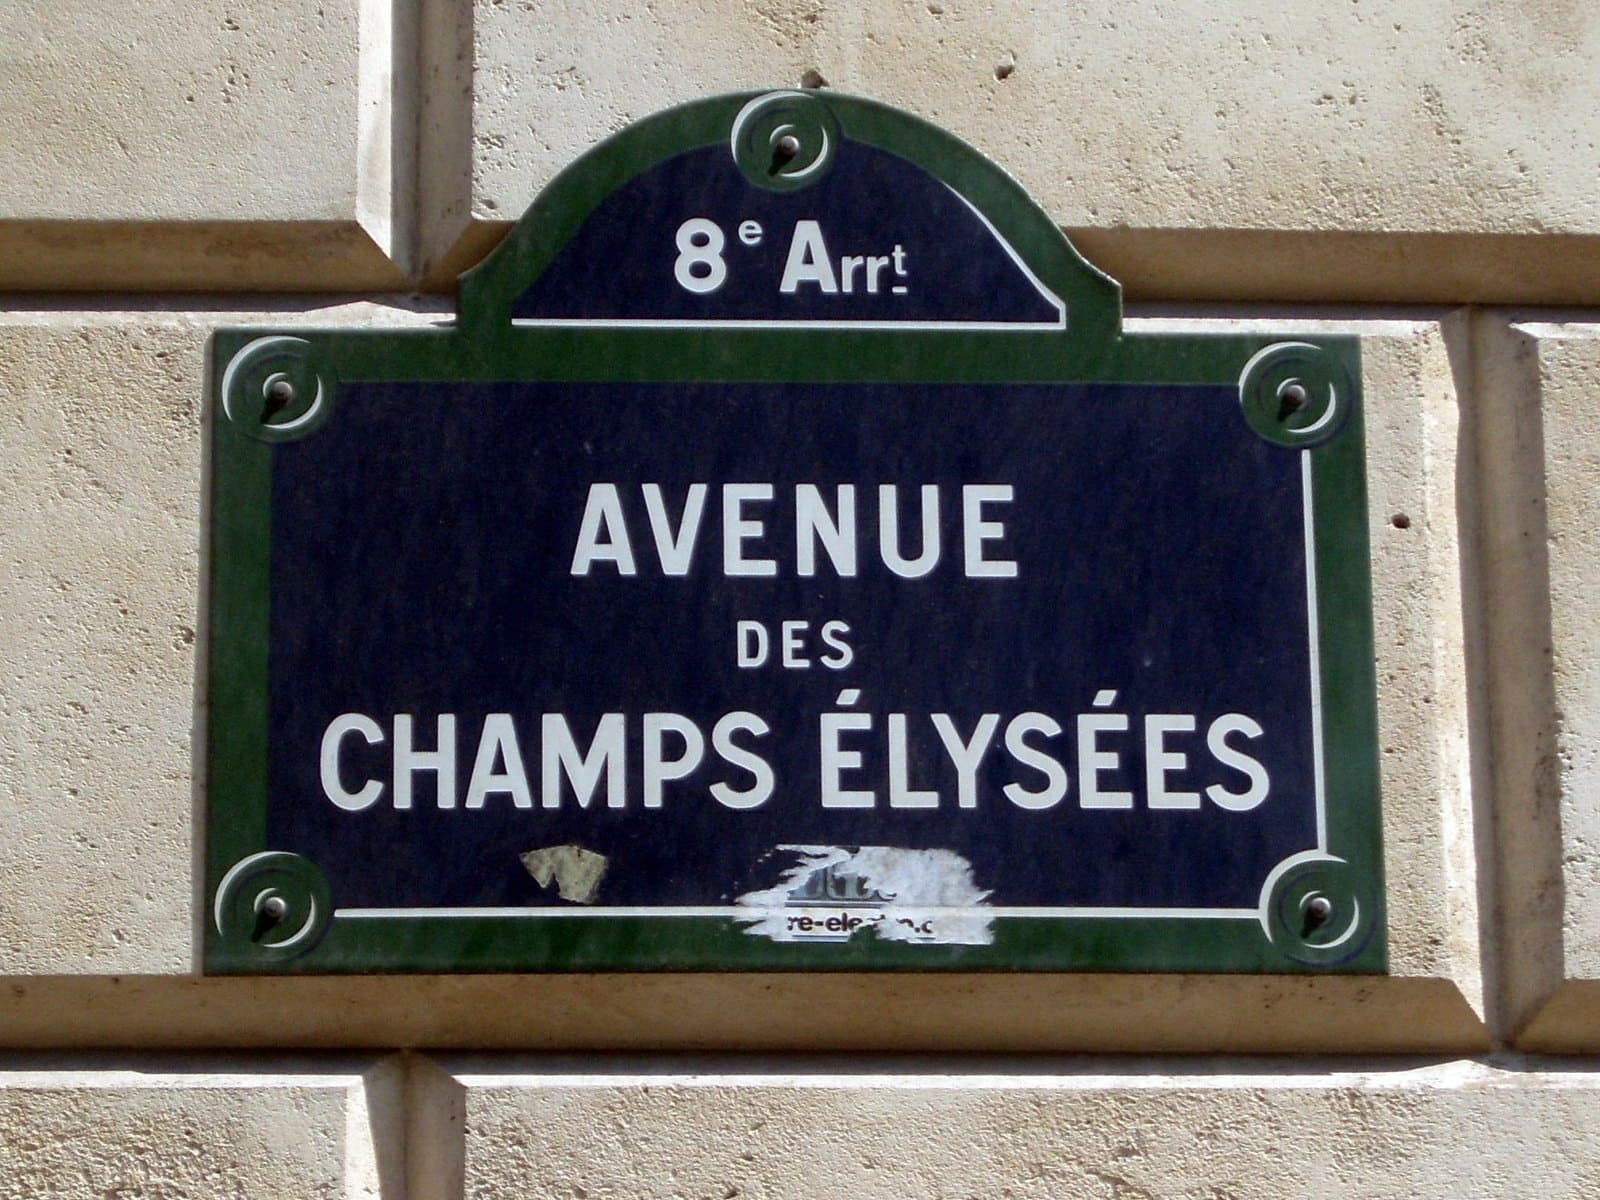 Avenue des Champs-elysees